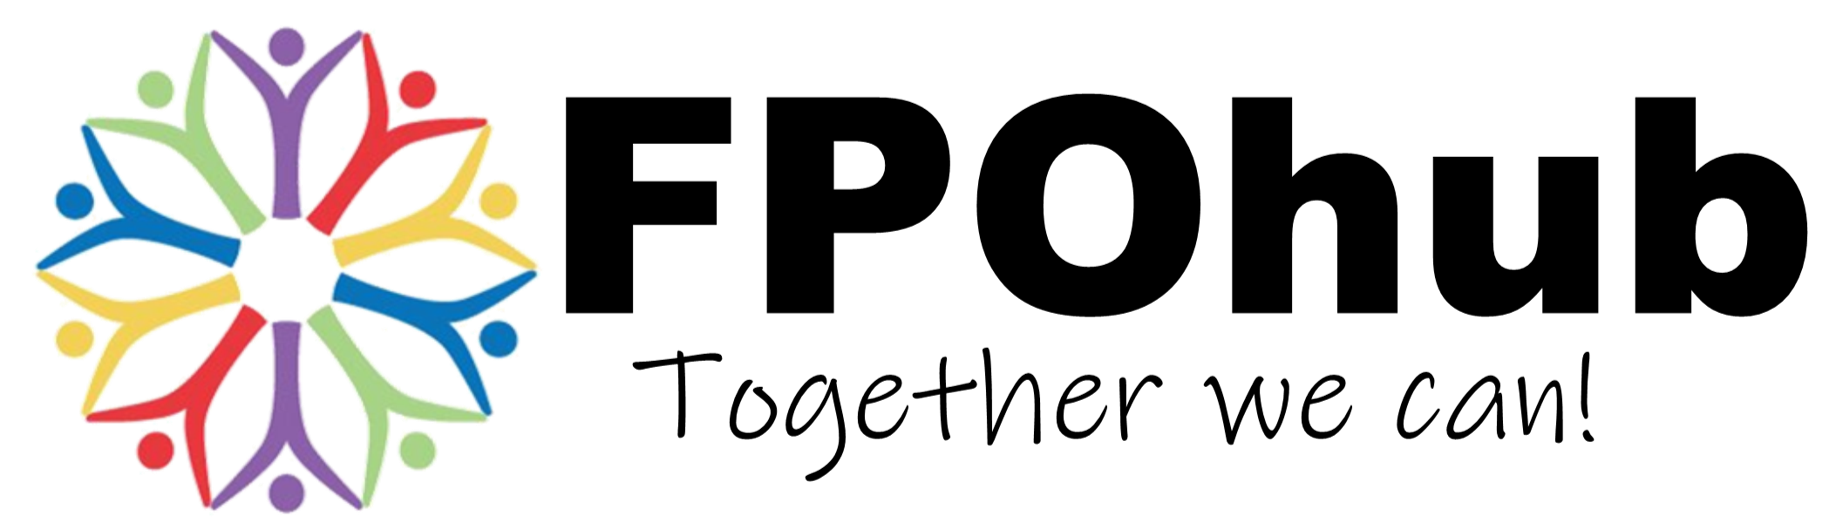 FPOhub Logo